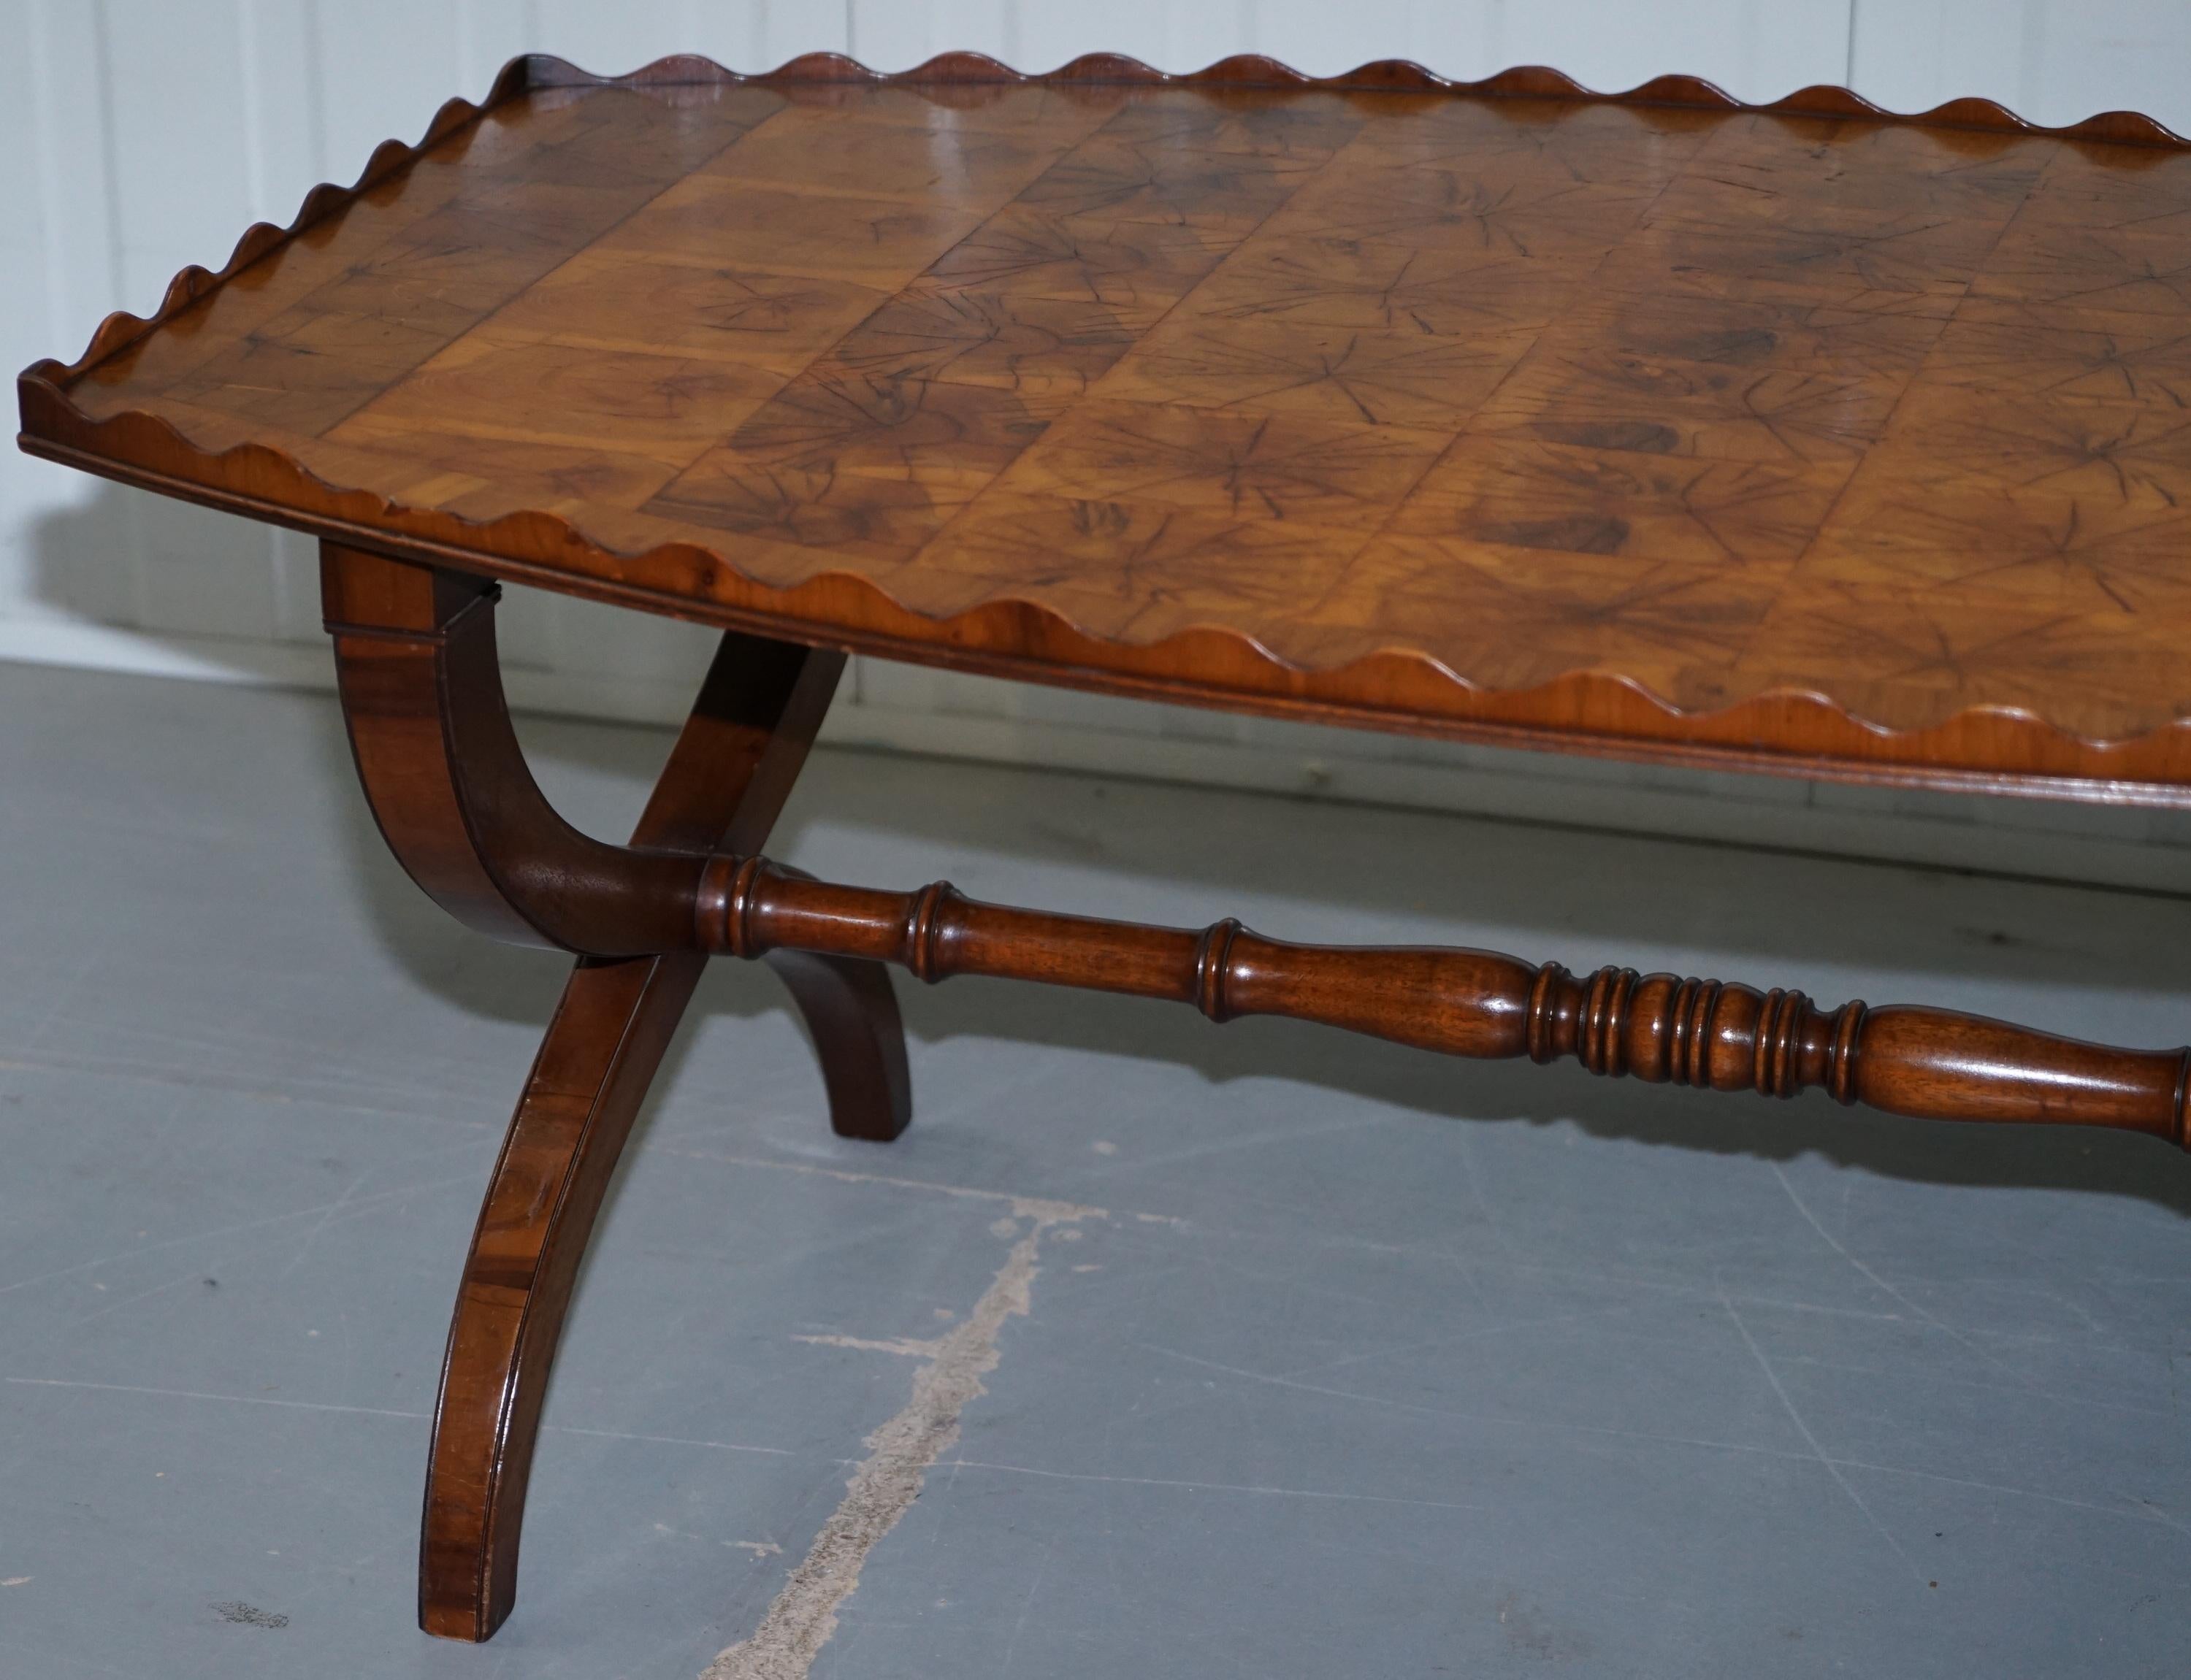 Rare 1930 Oyster Veneered Cross Band Coffee Table Scalloped Edge Walnut Mahogany 7